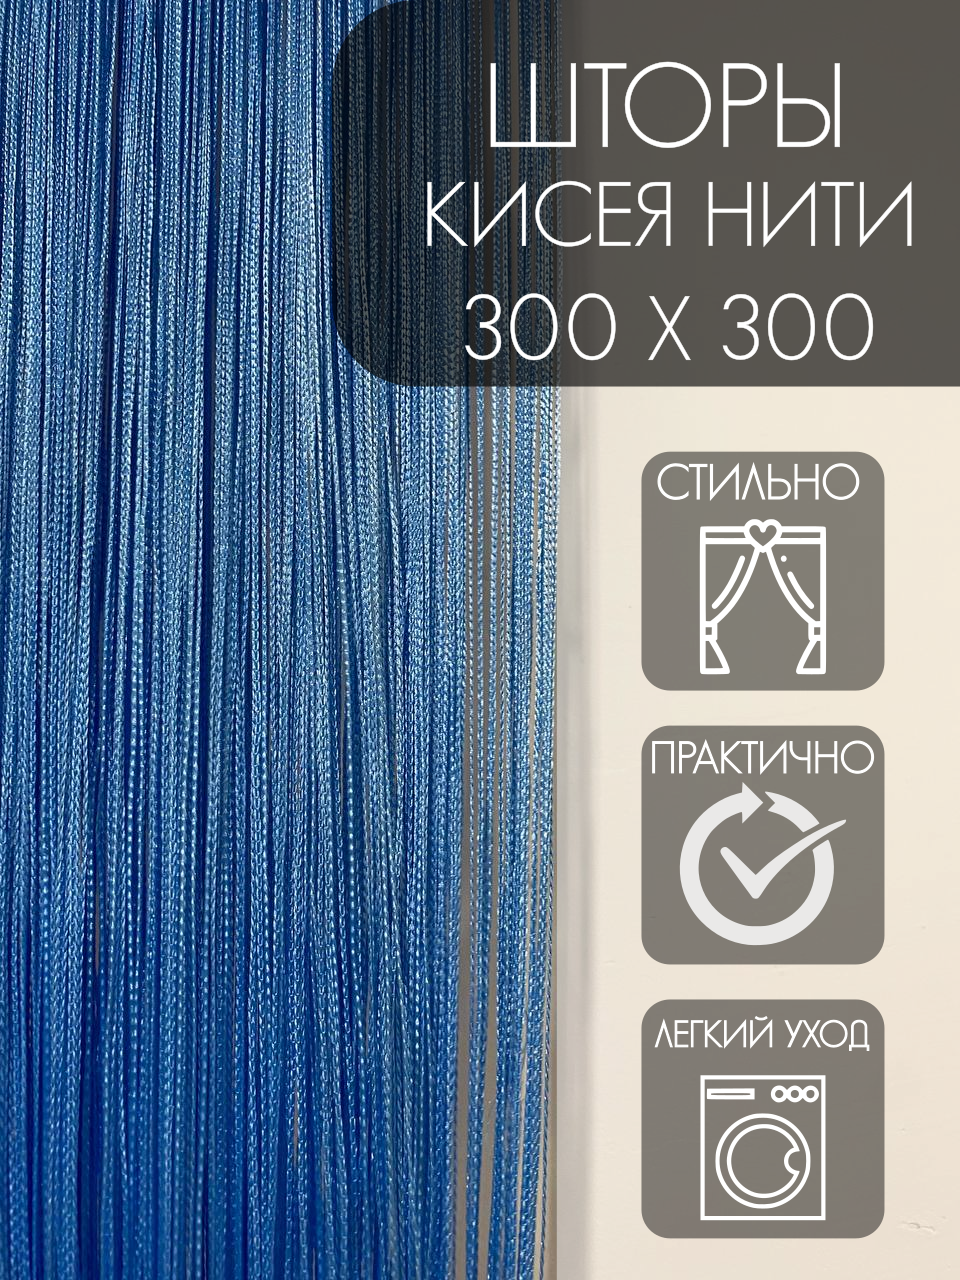 Нитяные шторы "Кисея" без люрекса 300х300 см голубой